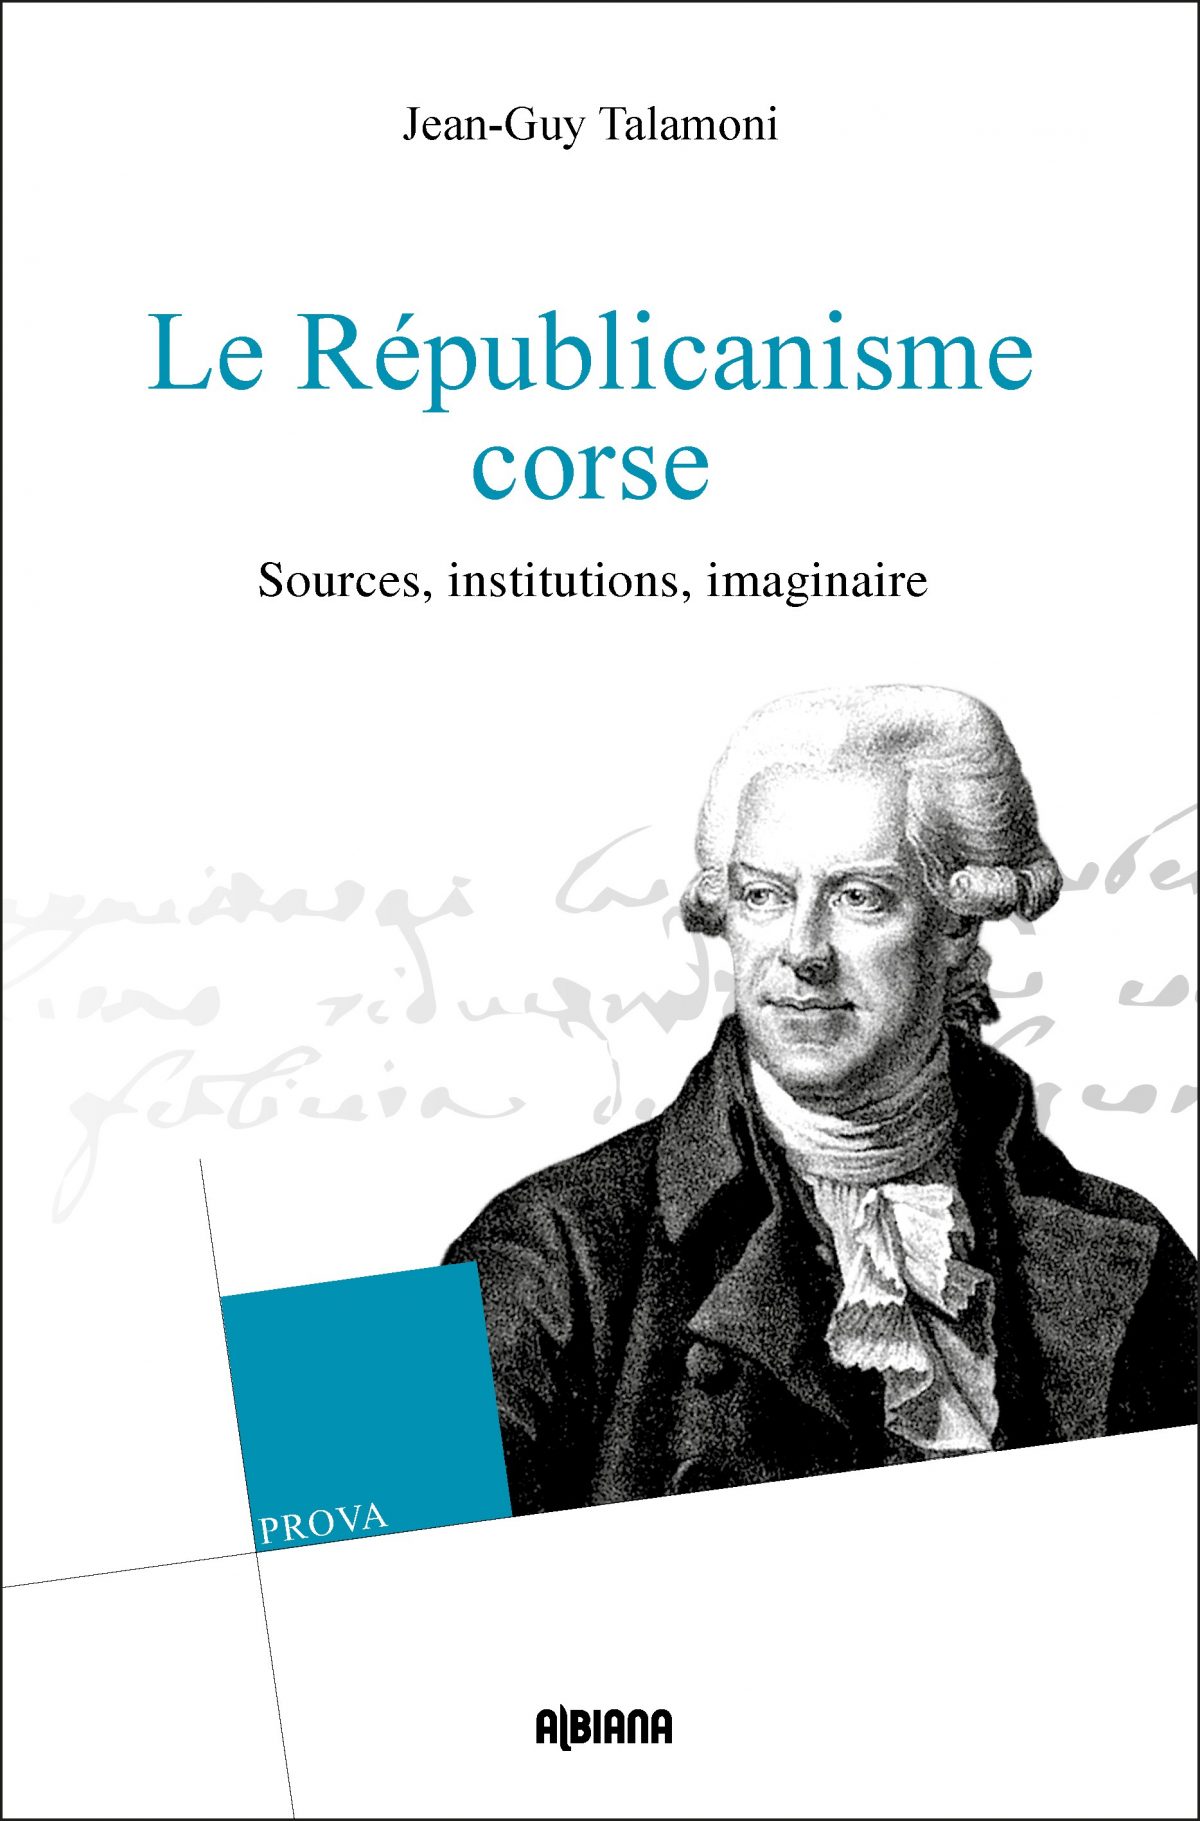 Le républicanisme corse – Sources, institutions, imaginaire, Ajaccio : Albiana, 2018.